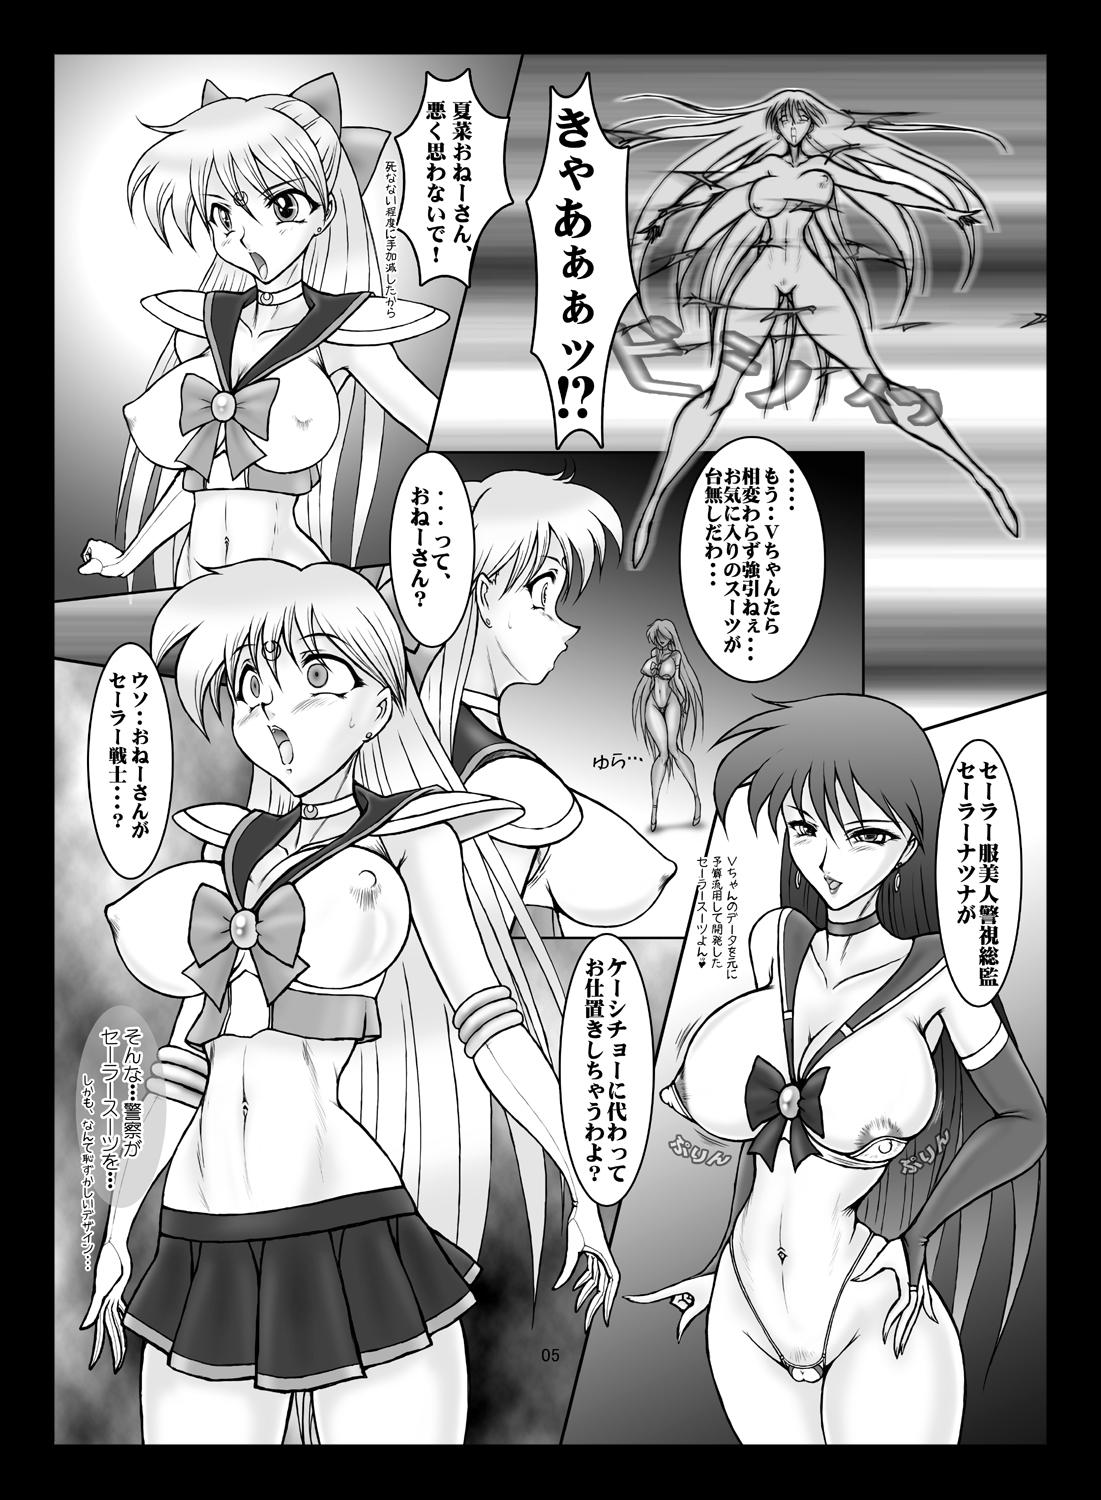 One V for Sailor V - Sailor moon Amateurs Gone Wild - Page 4